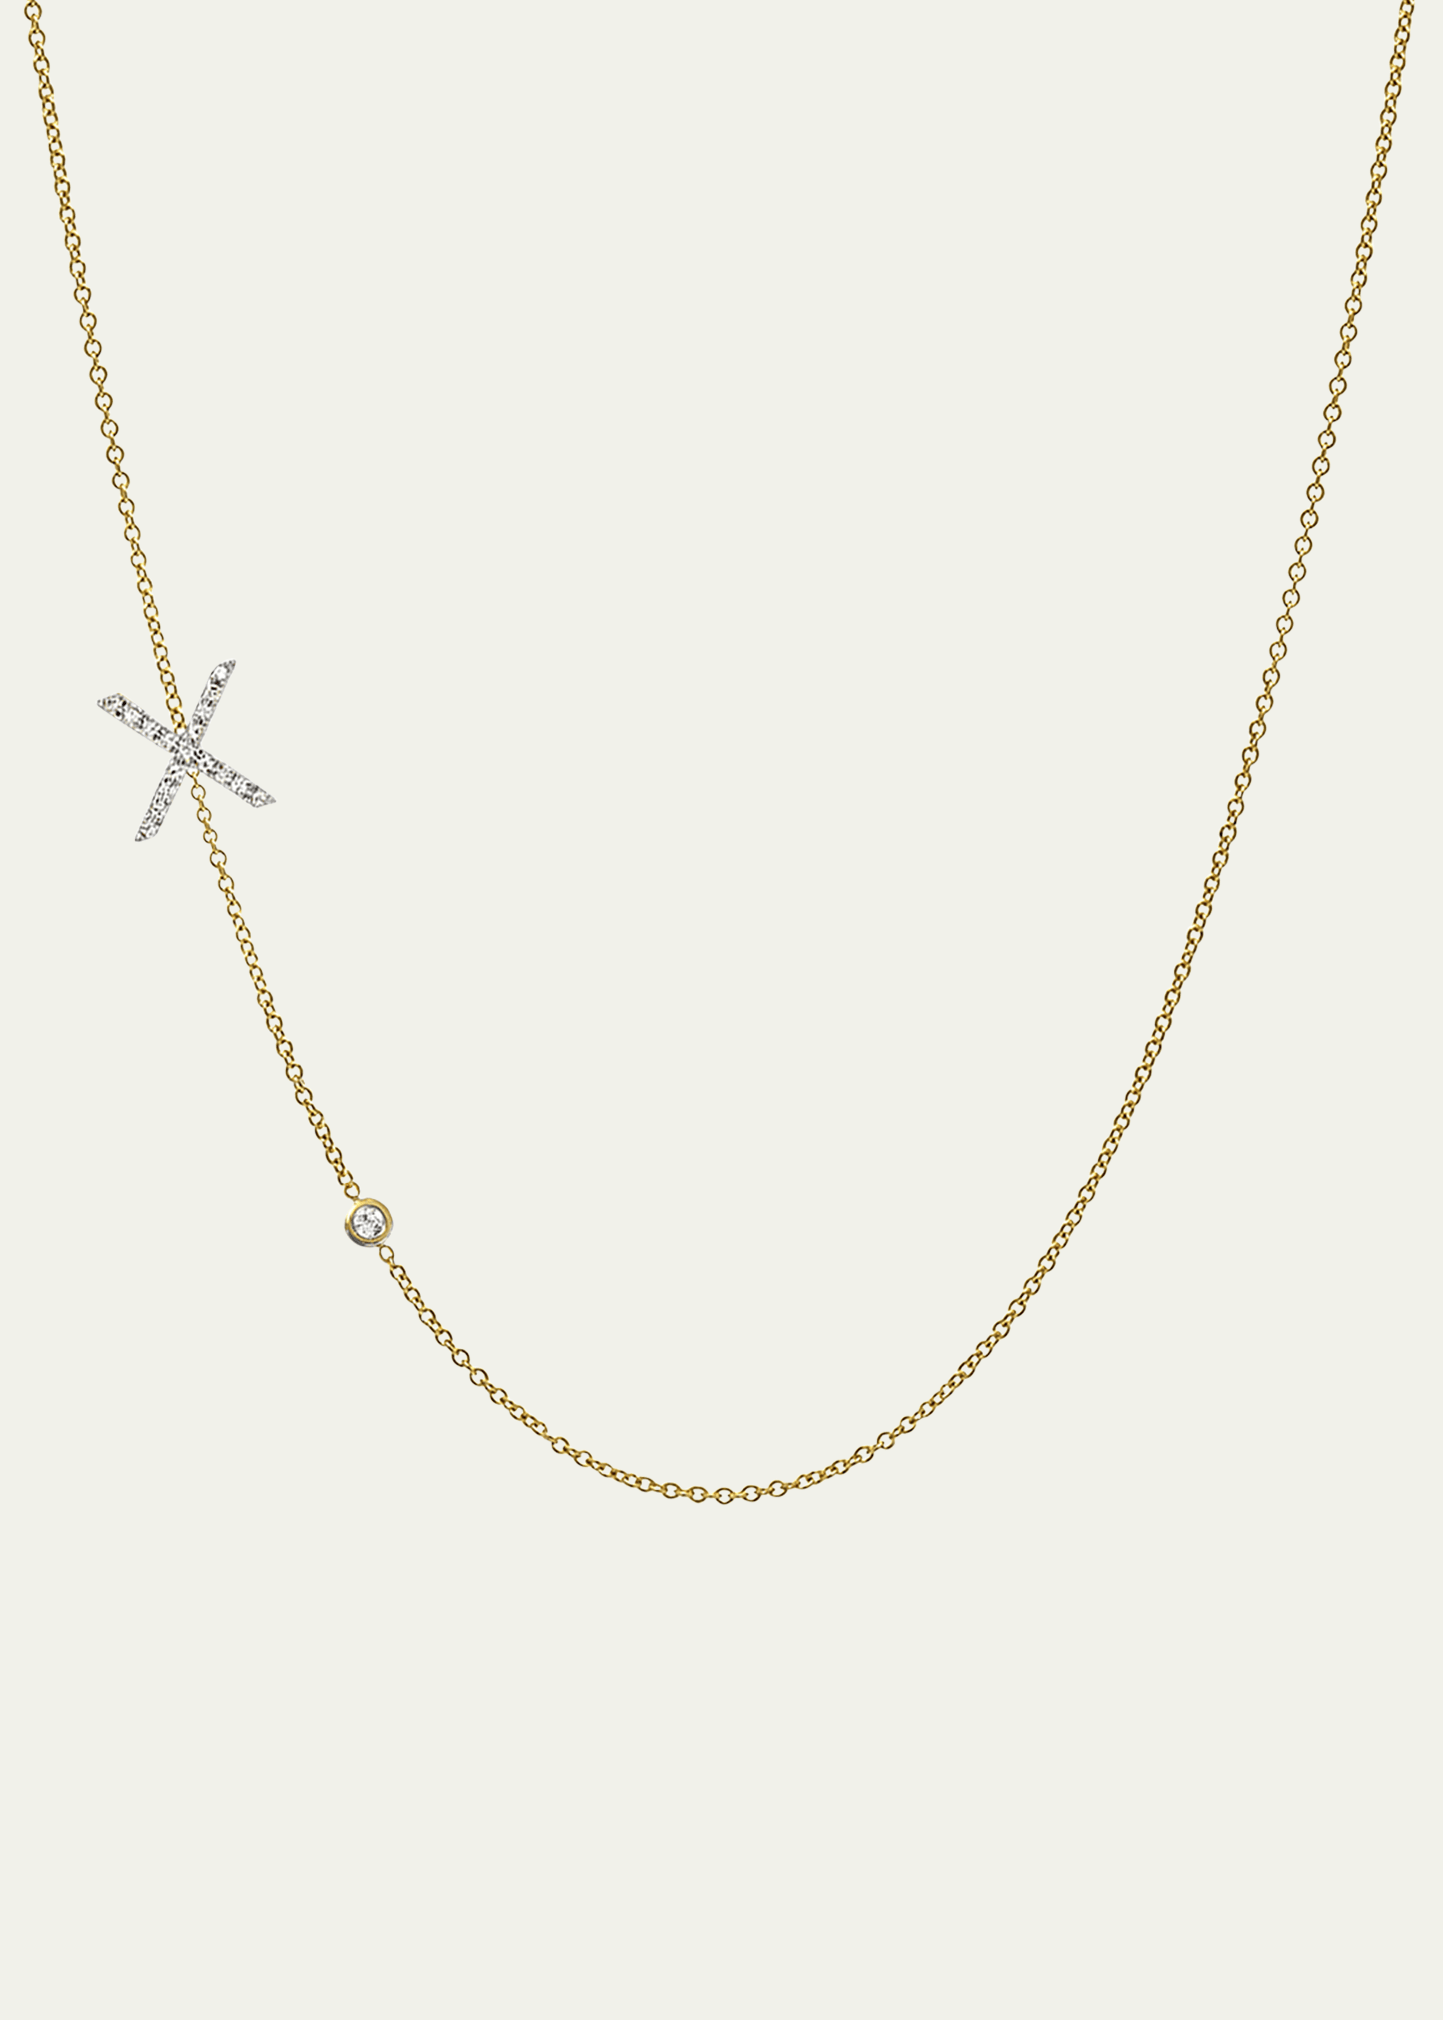 Zoe Lev Jewelry 14k Yellow Gold Diamond Initial X Necklace